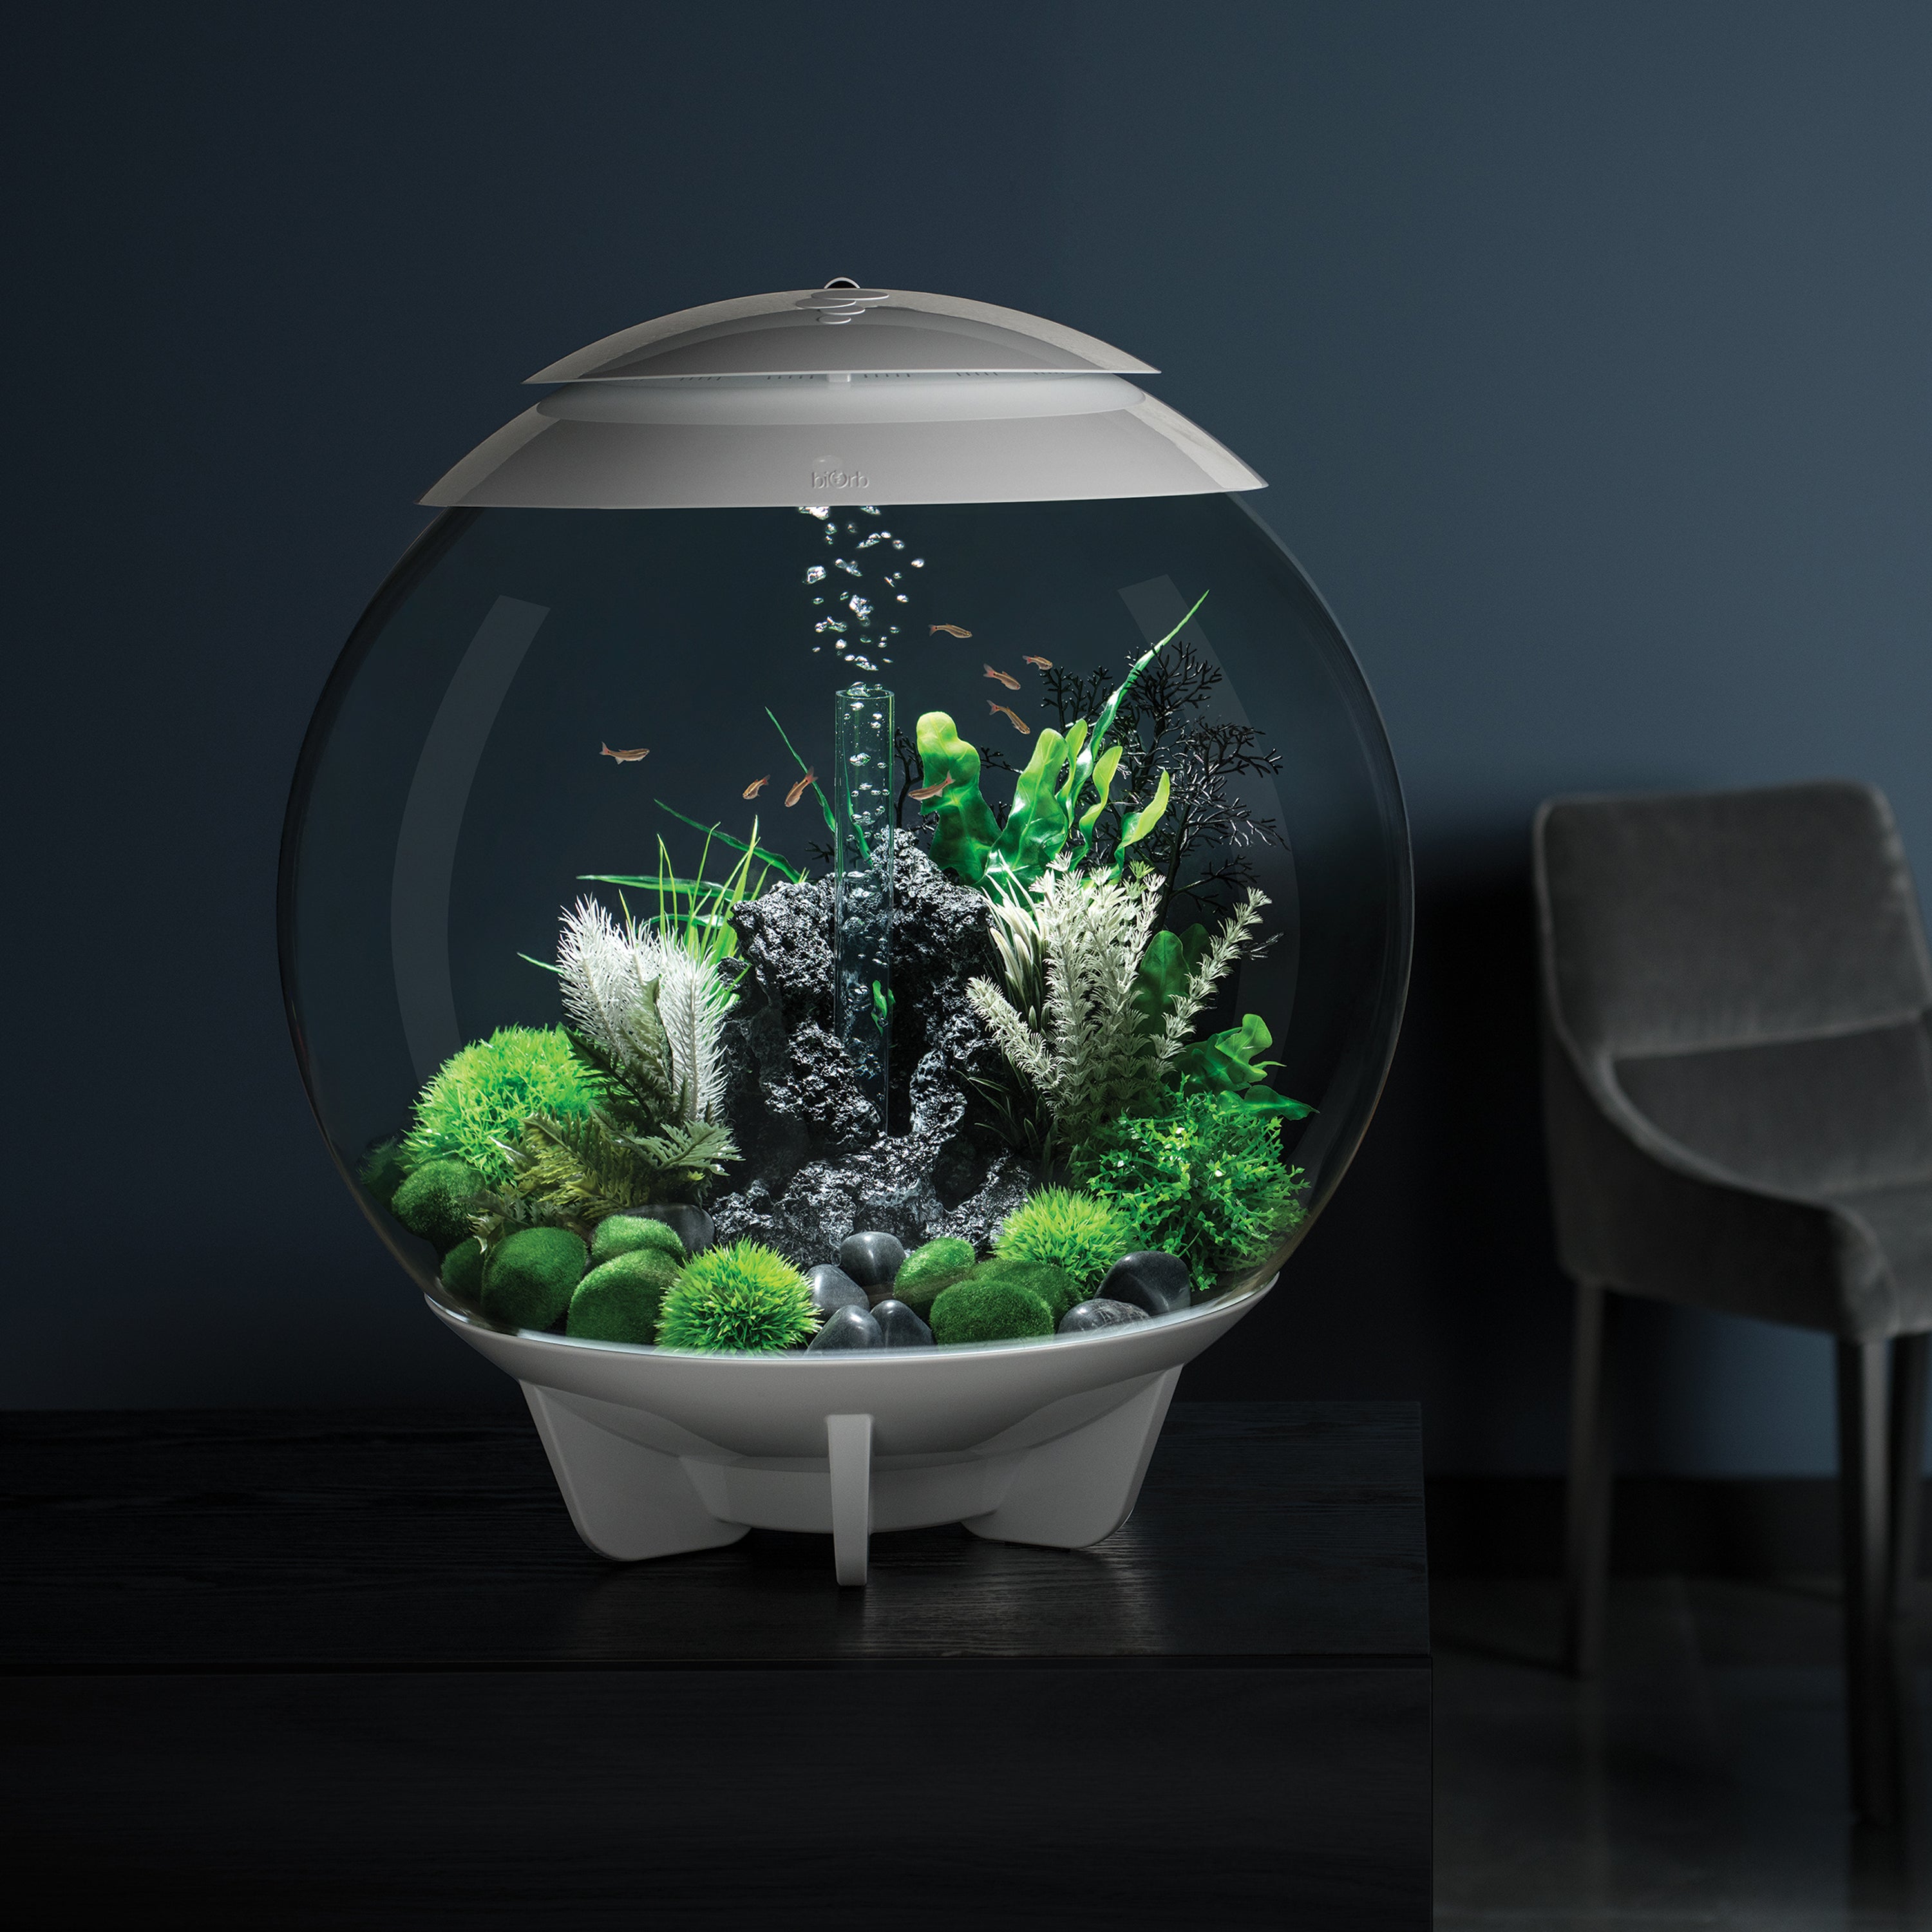 Composition pour aquarium biOrb Halo 60 L